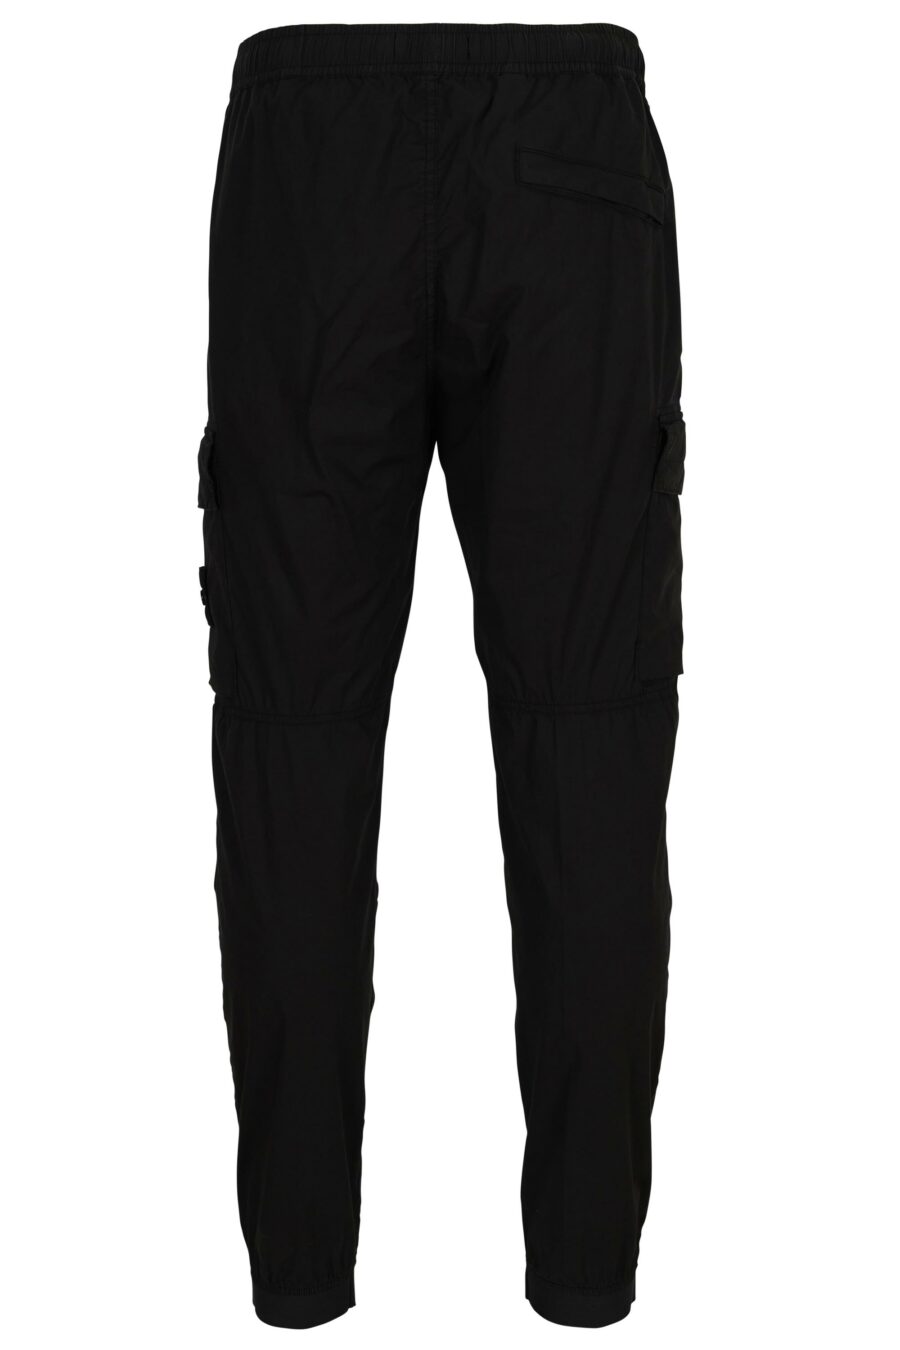 Pantalon fuselé noir avec logo boussole - 8052572851124 1